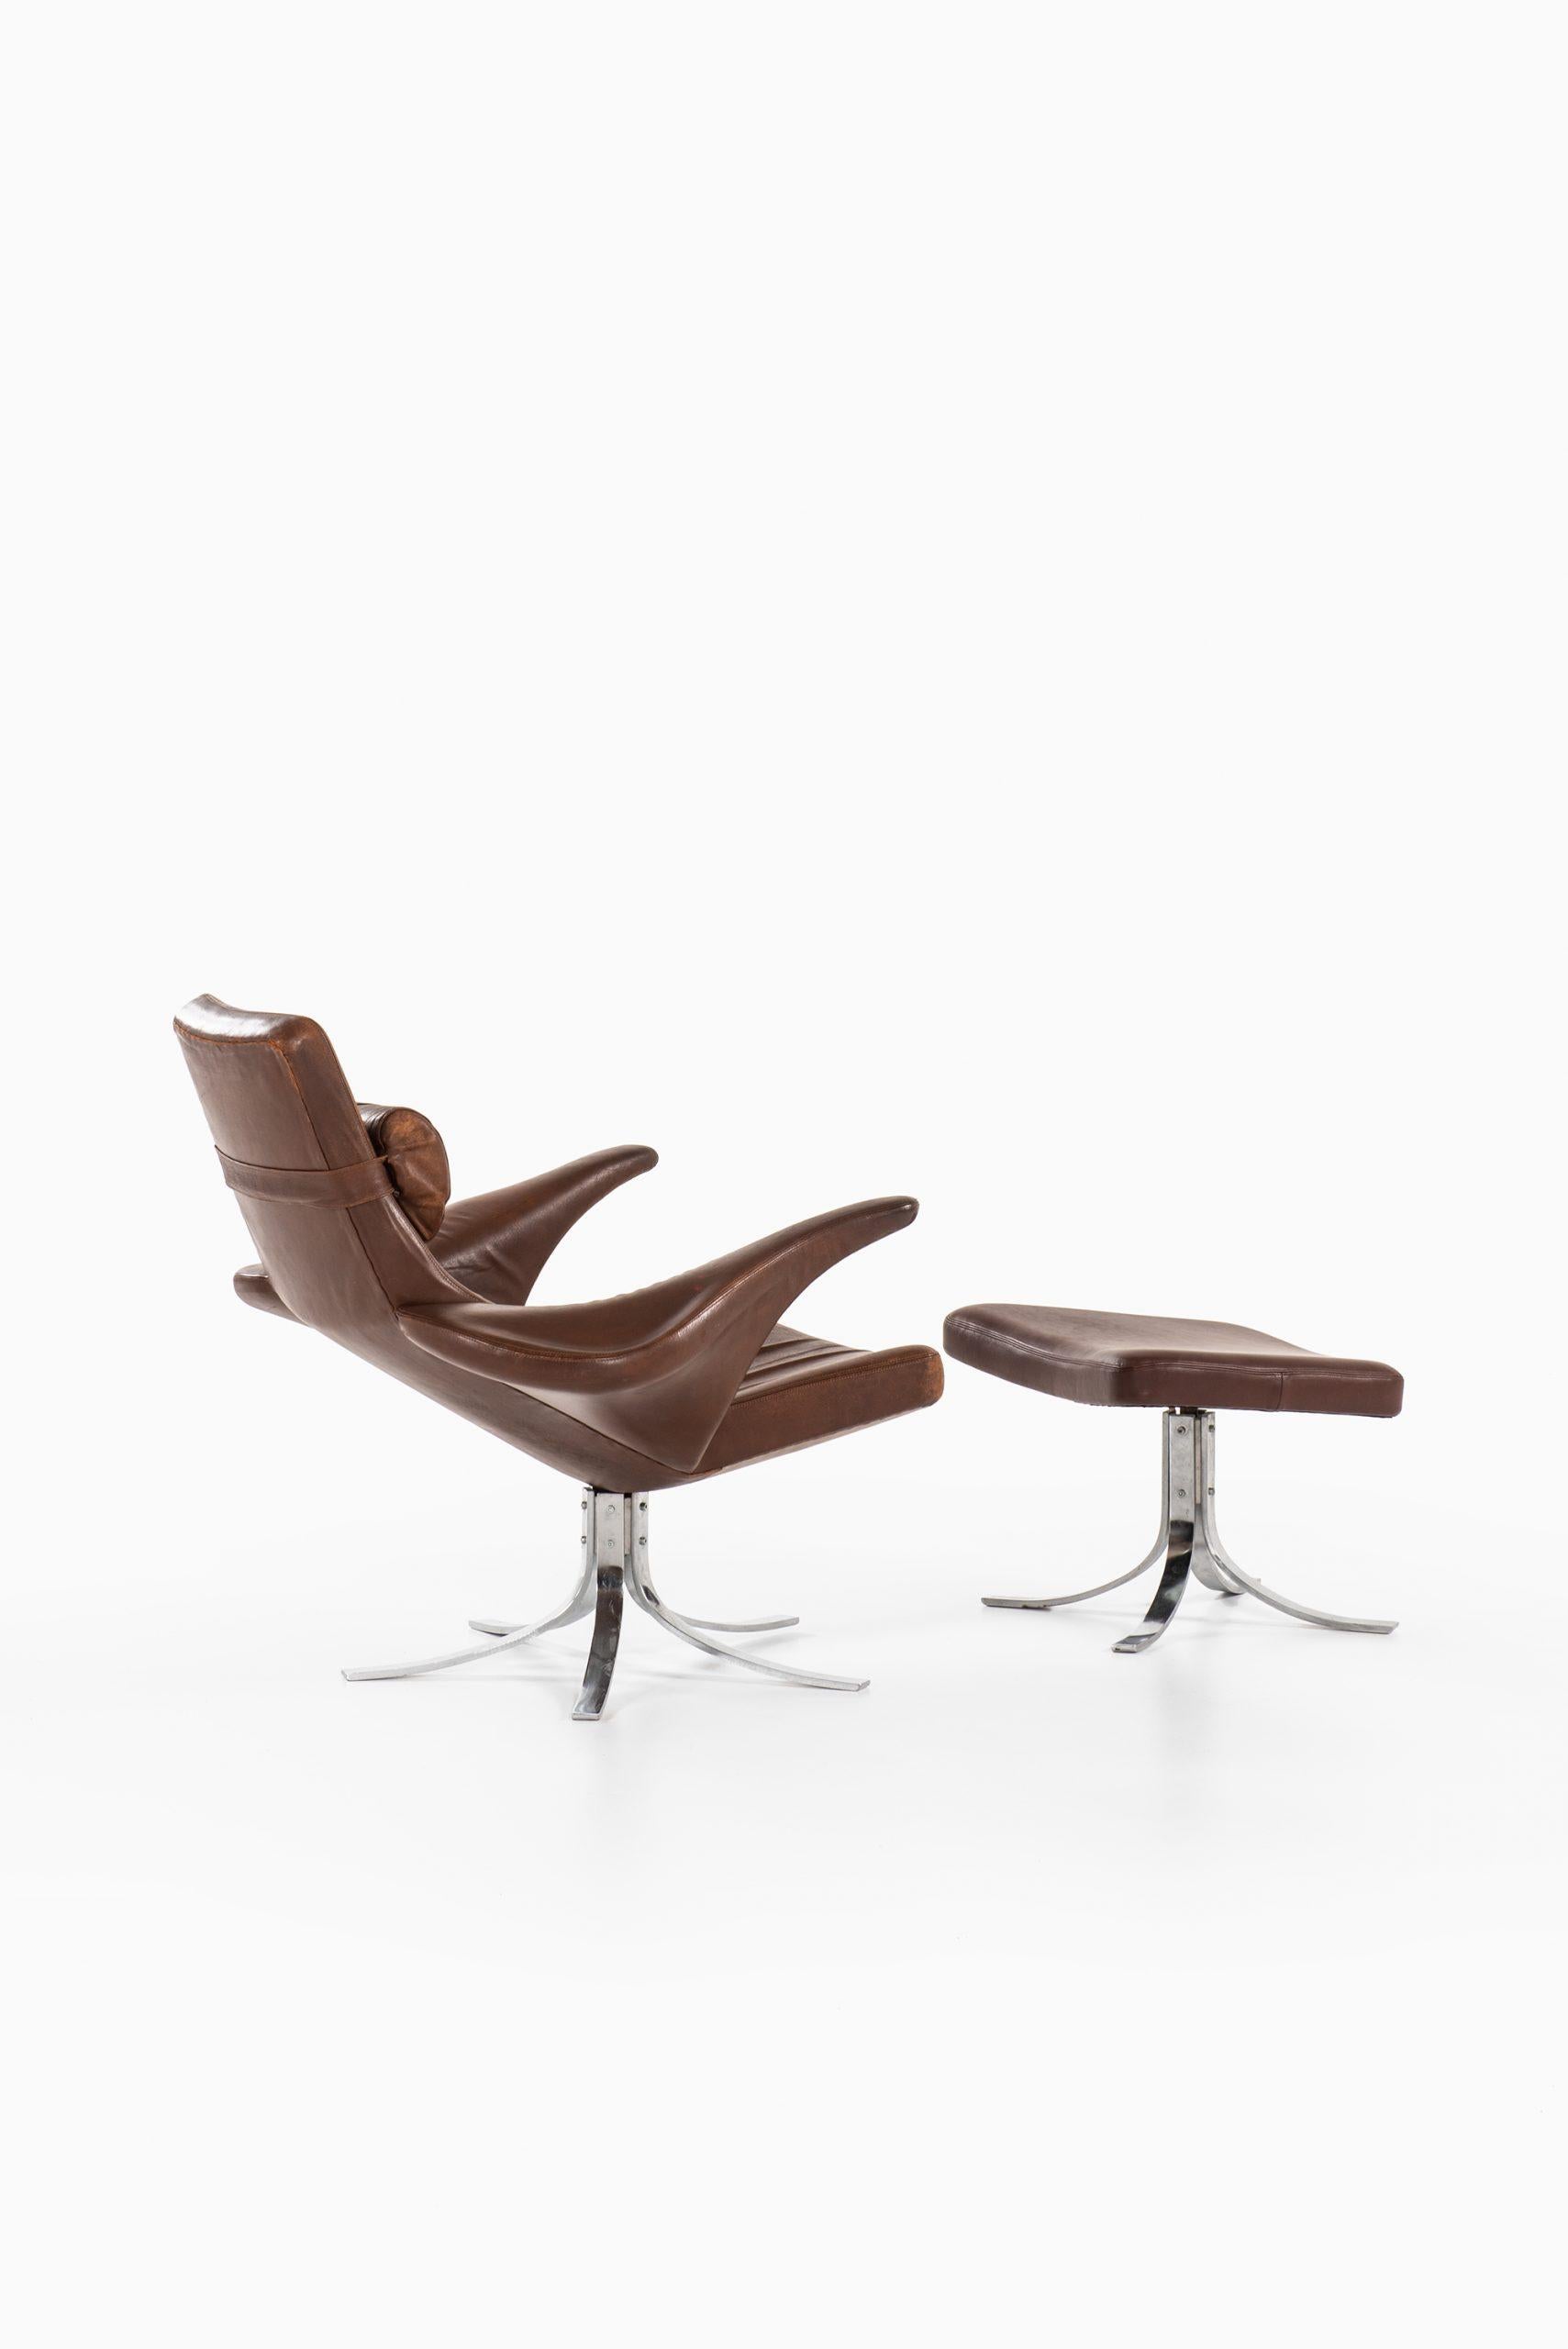 Gösta Berg Easy Chair with Stool Model Måsen / Seagull by Fritz Hansen For Sale 2